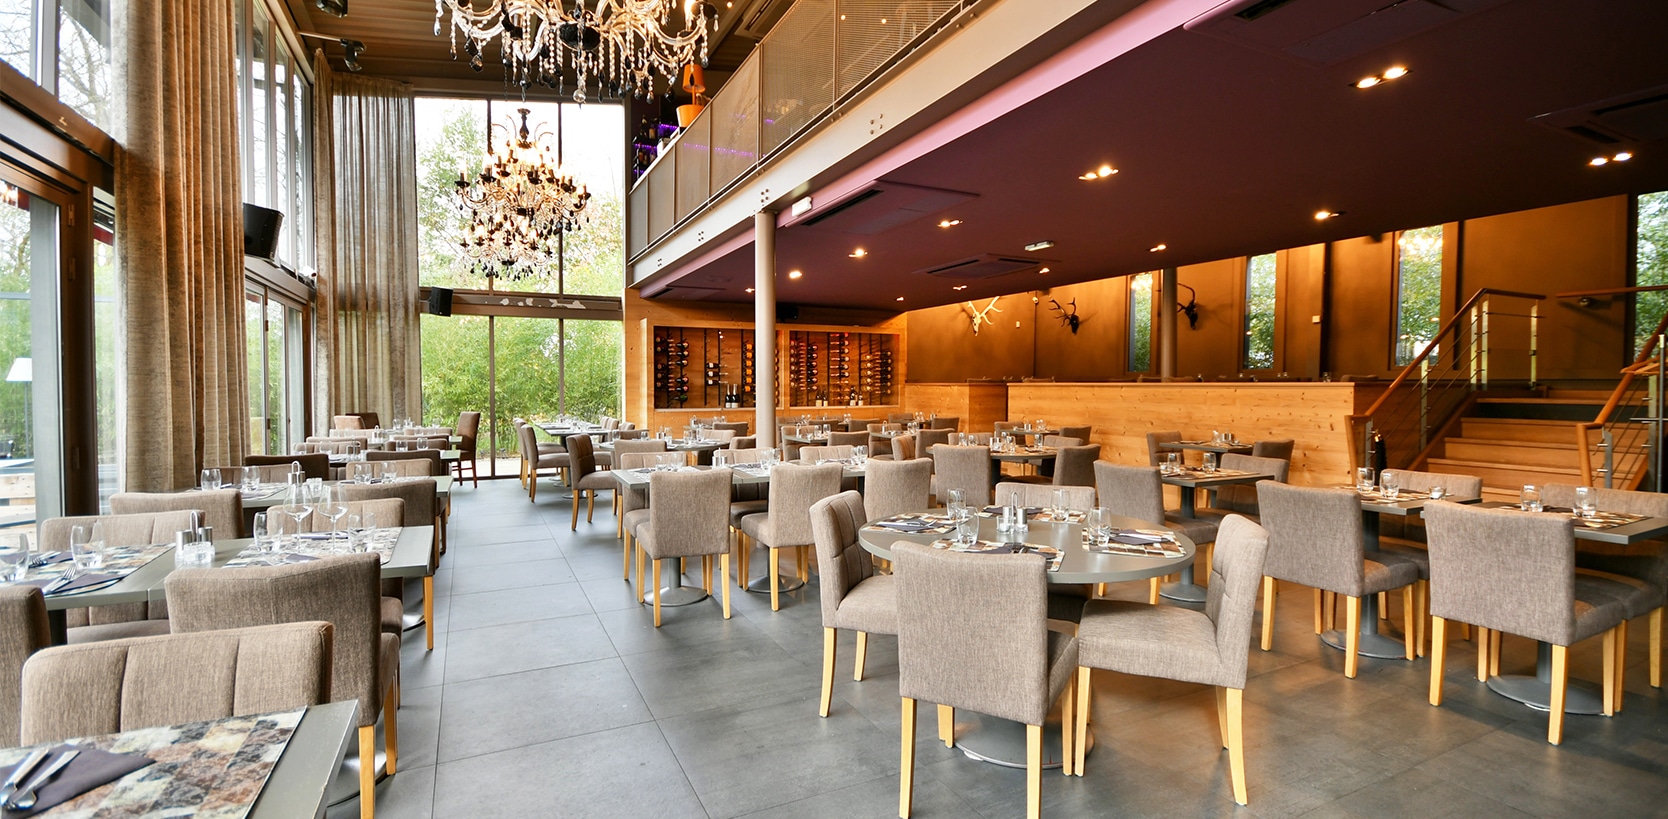 L'Unik Brasserie - restaurant Haguenau : Le midi pour vos repas d'affaires, de famille ou entre amis